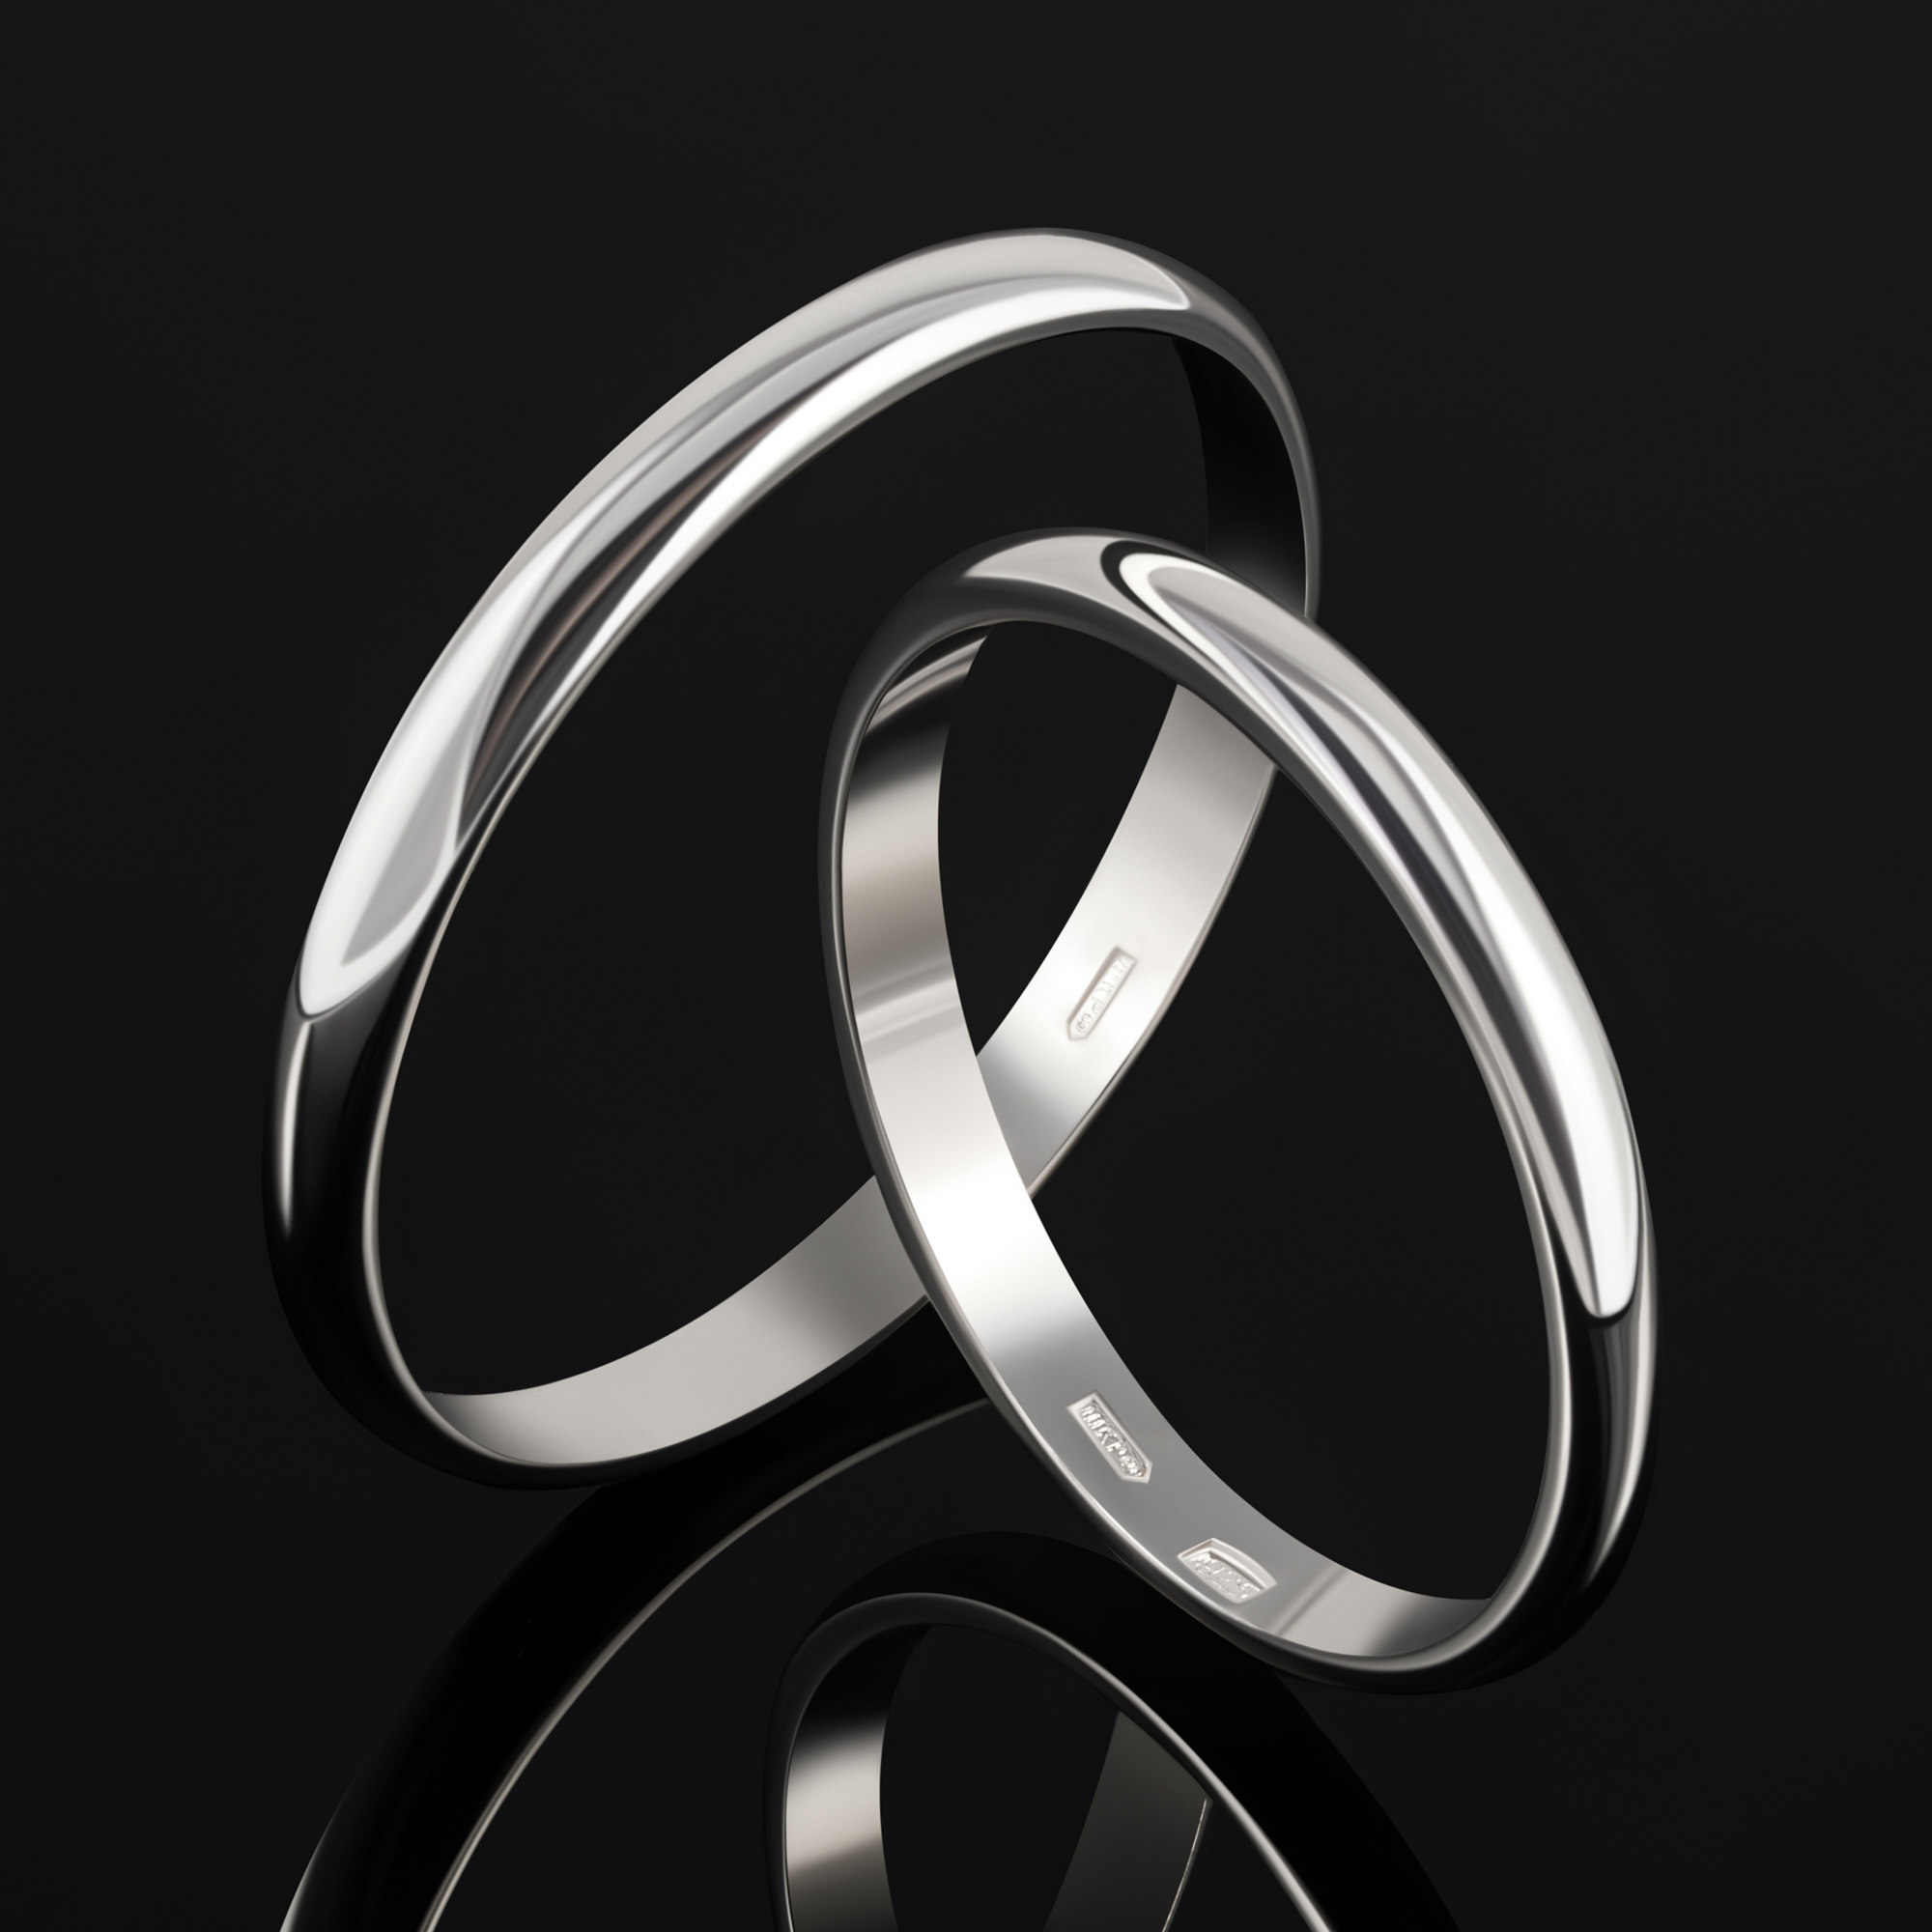 Серебряное кольцо обручальное Золотая подкова ЯВ8287-20С, размеры от 16 до 22.5